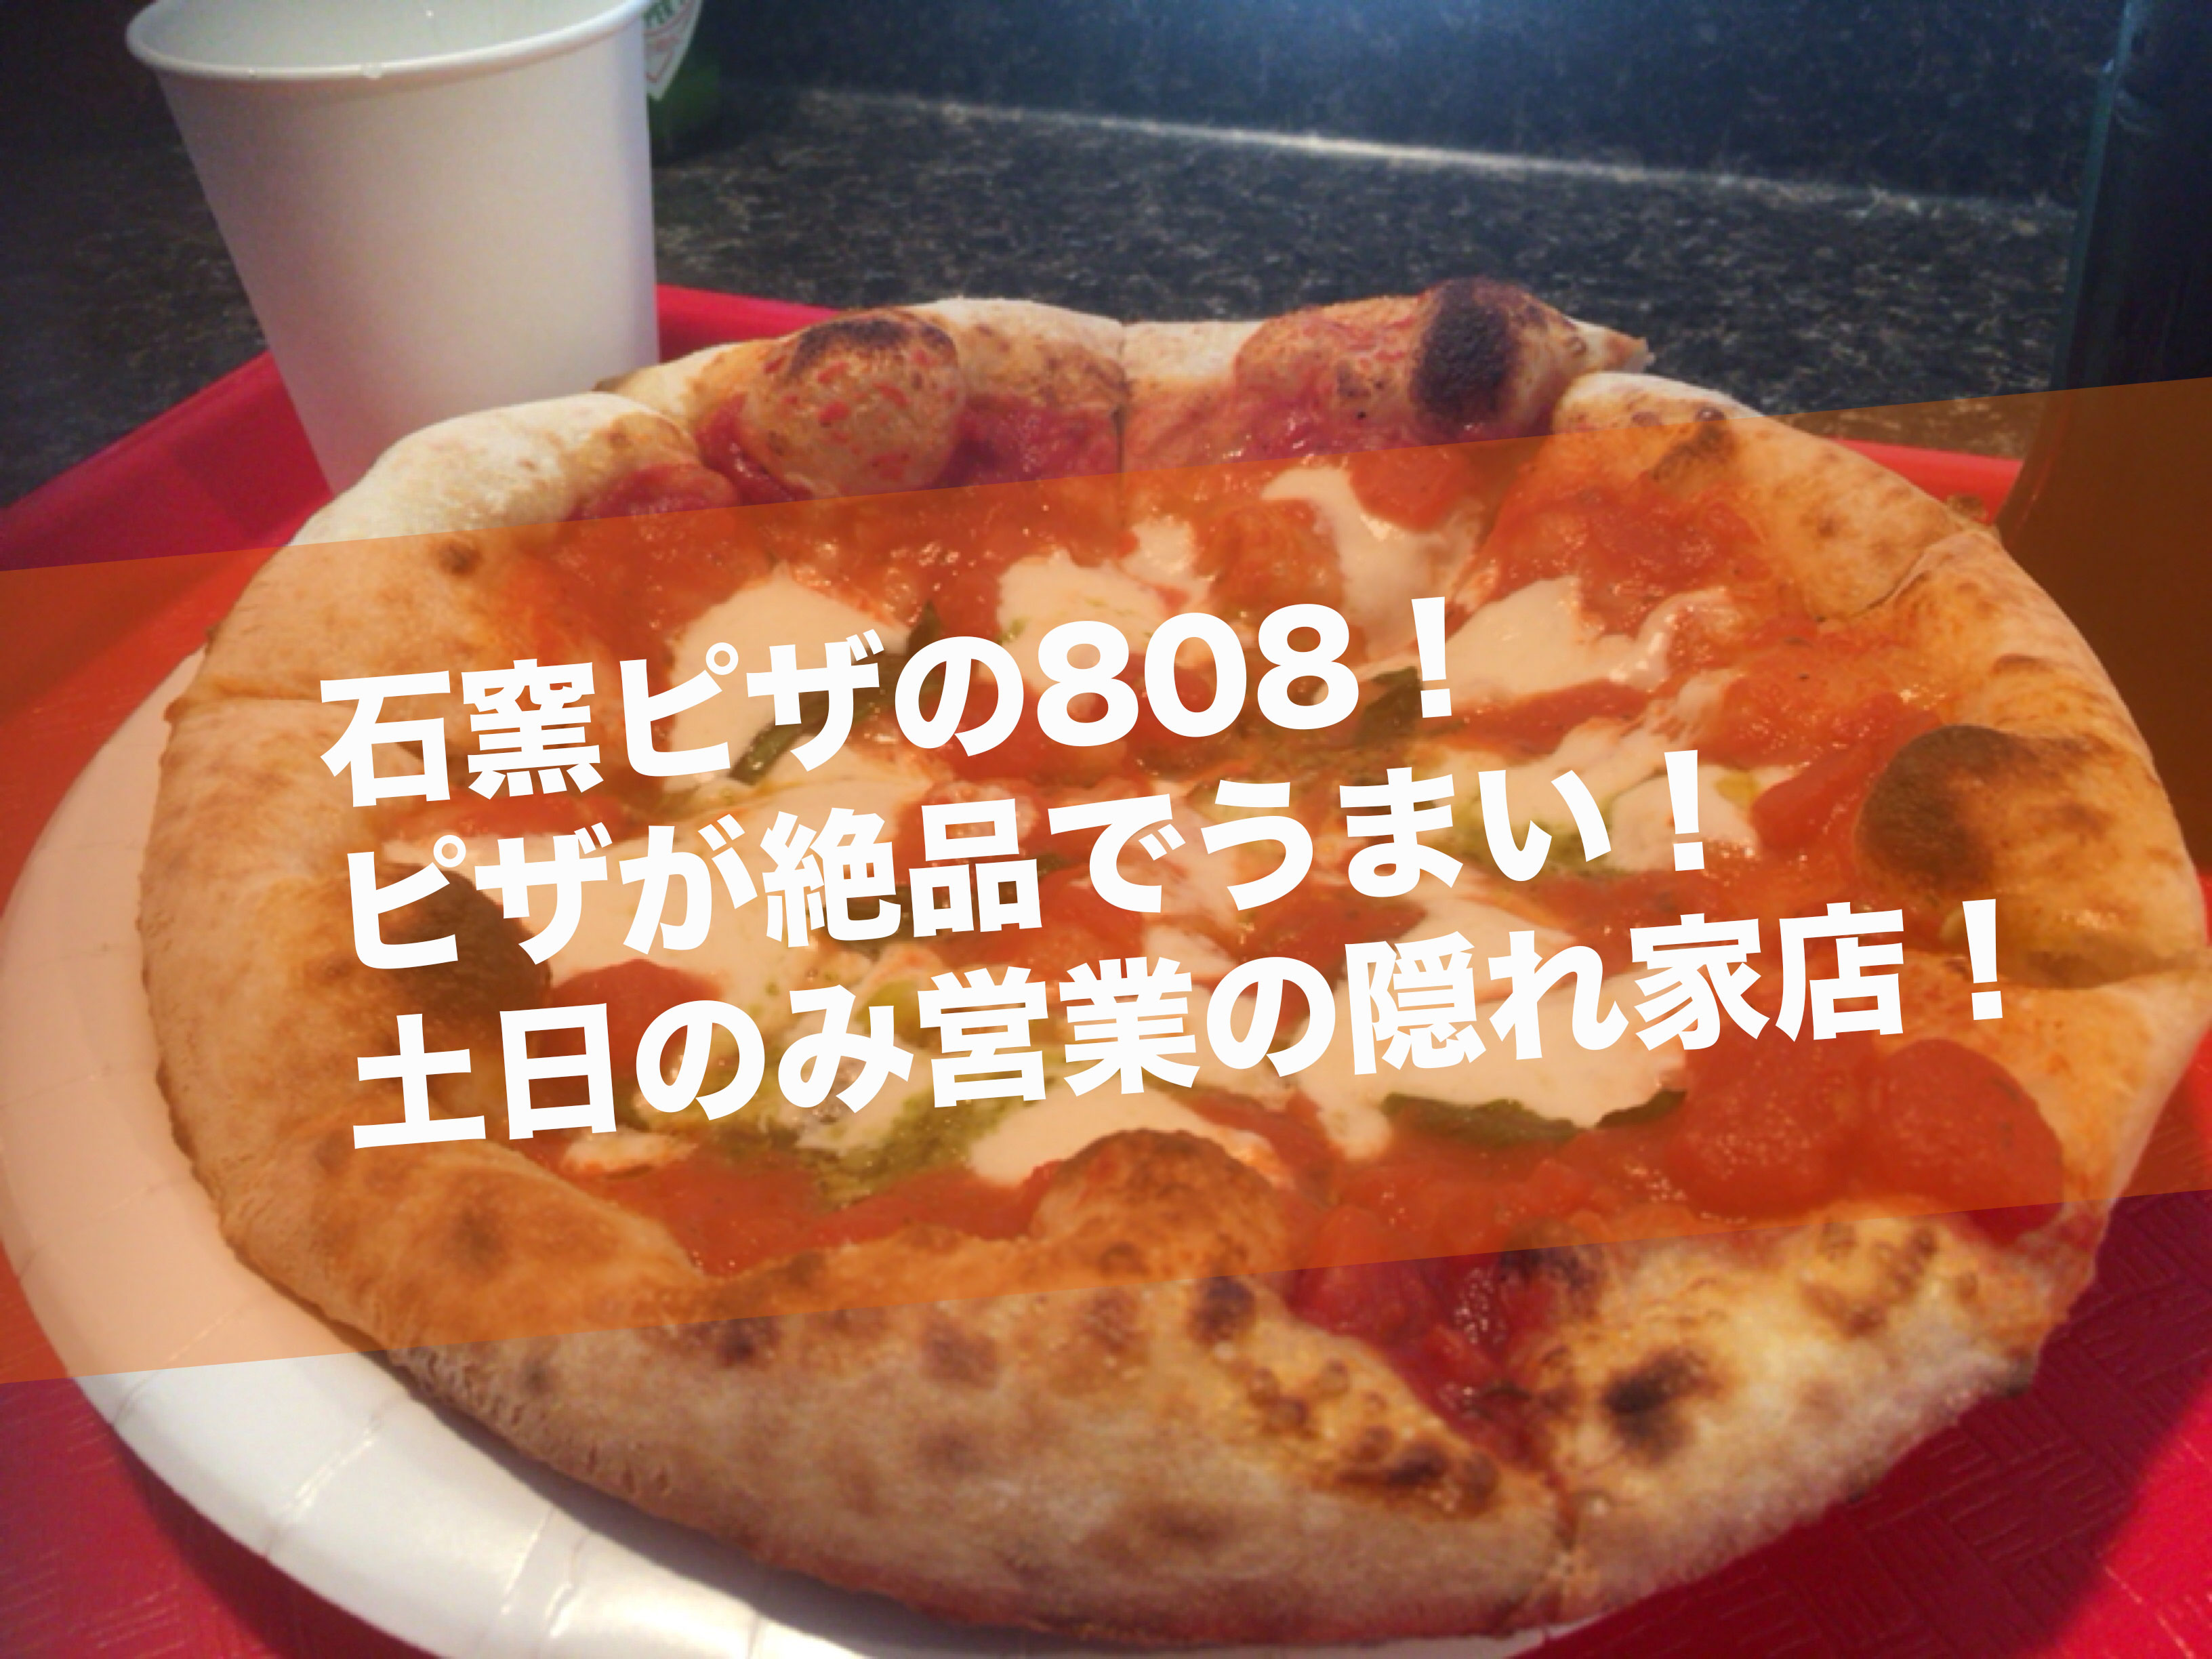 岡崎の808 エイトオーエイト 石窯ピザがうまい 土日のみの営業の隠れ家店 岡崎にゅーす